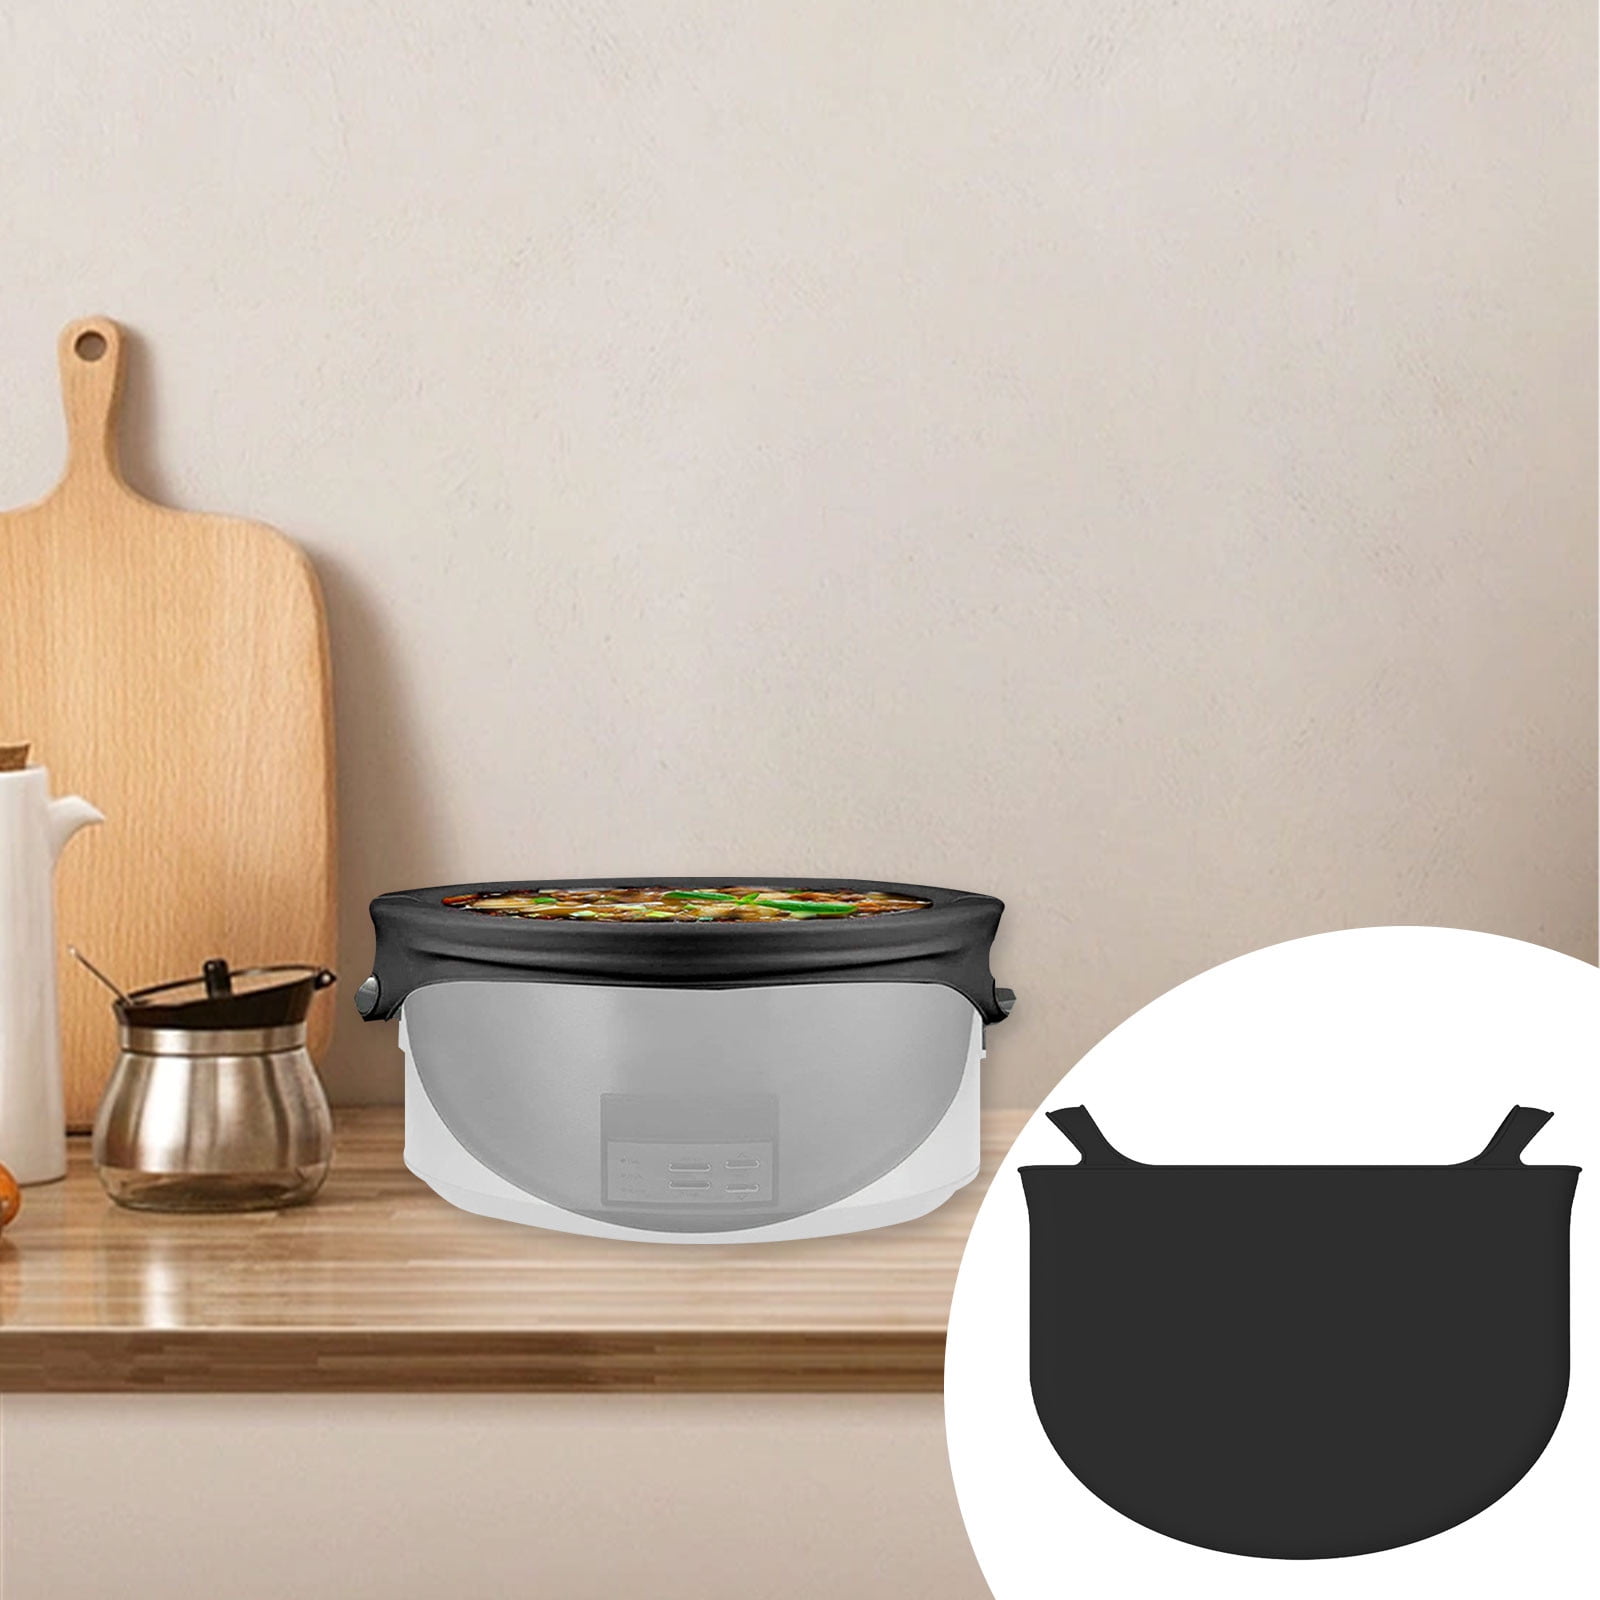 Melon Melo Reusable Crock Pot Liner - Food Grade Silicone Slow Cooker Liner for 6-8 Quarts Leakproof Dishwasher Safe Cooker B